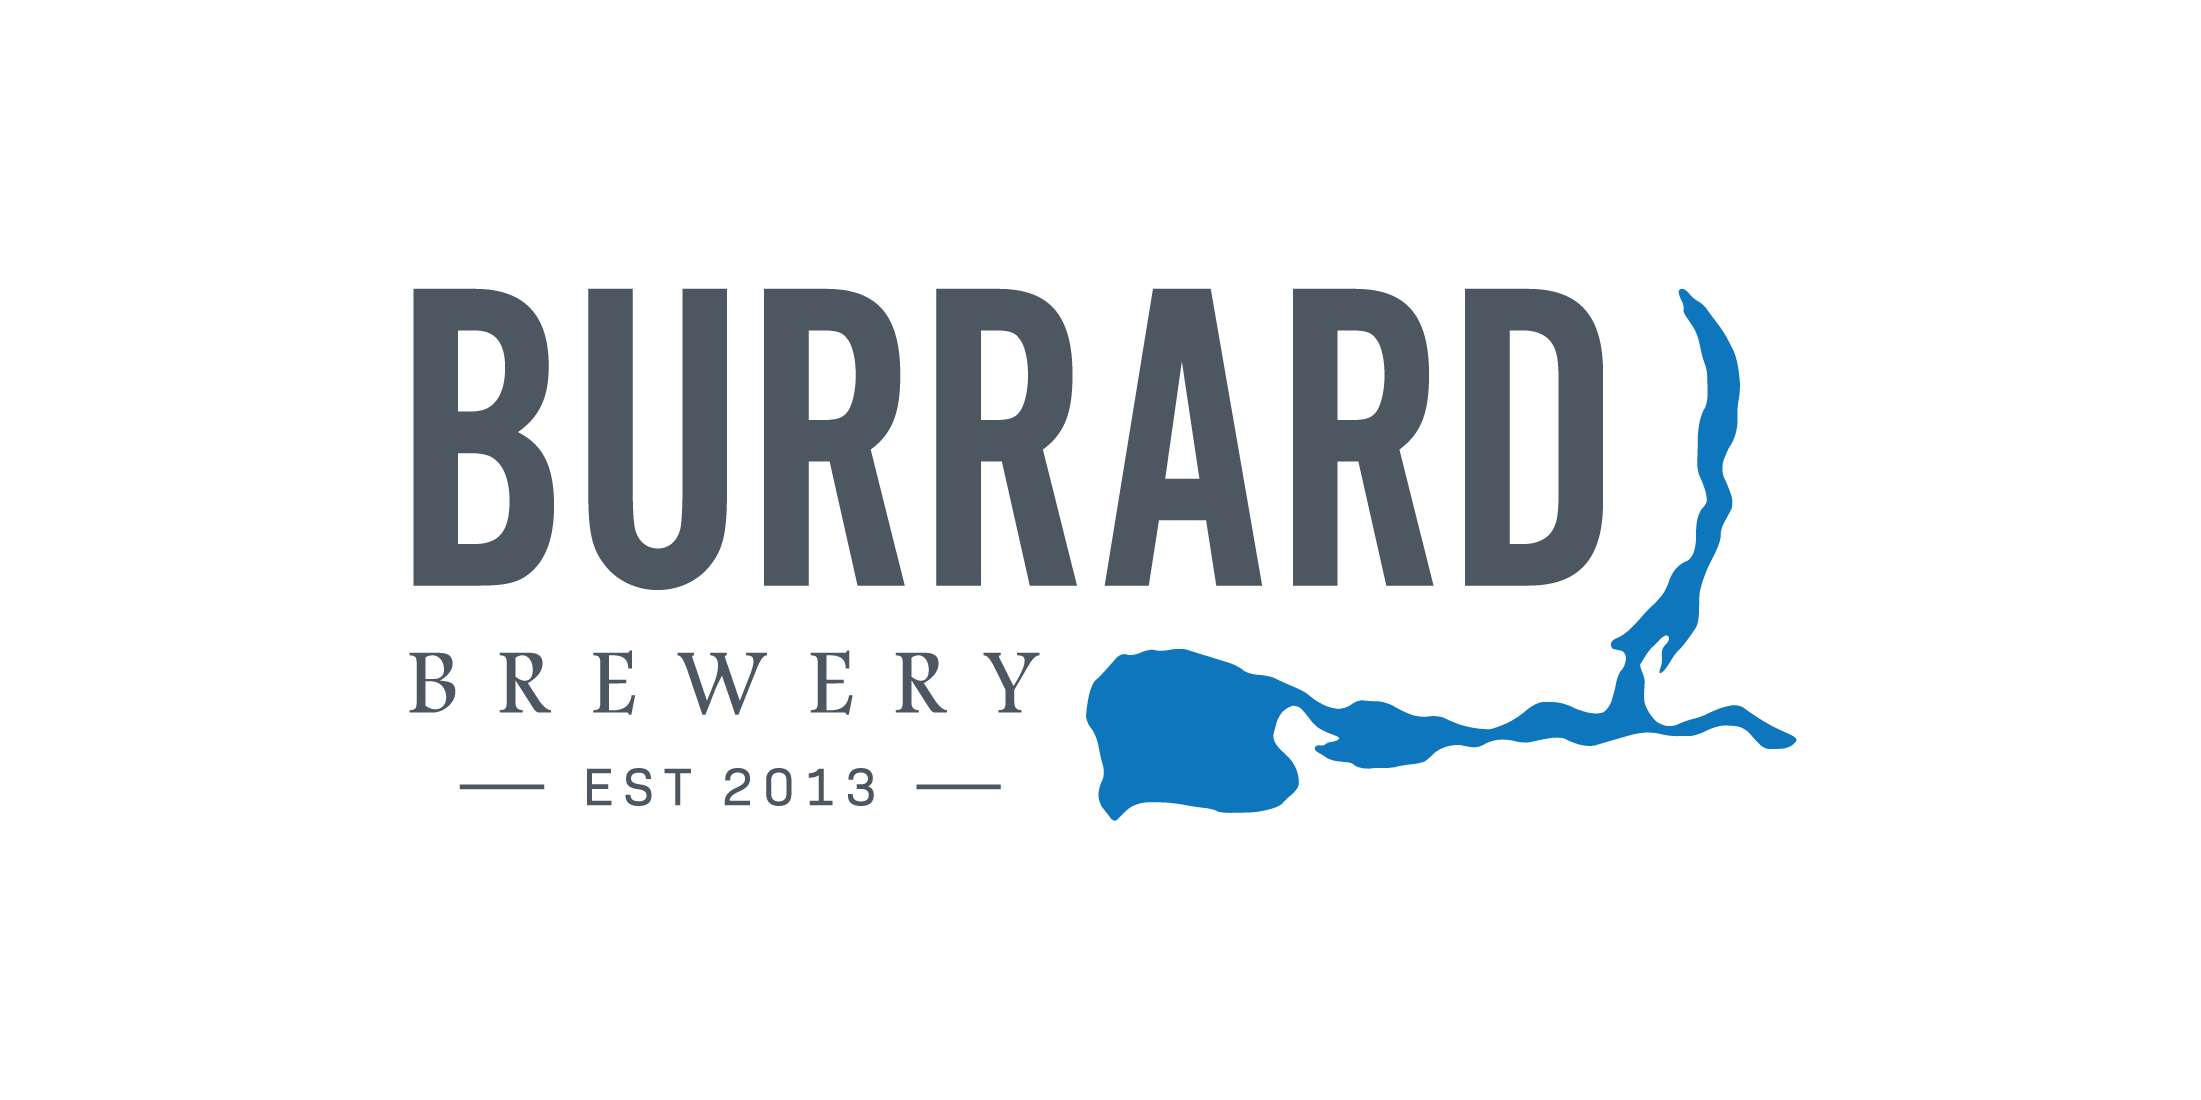 Burrard Brewery - Branding & Packaging Design 3